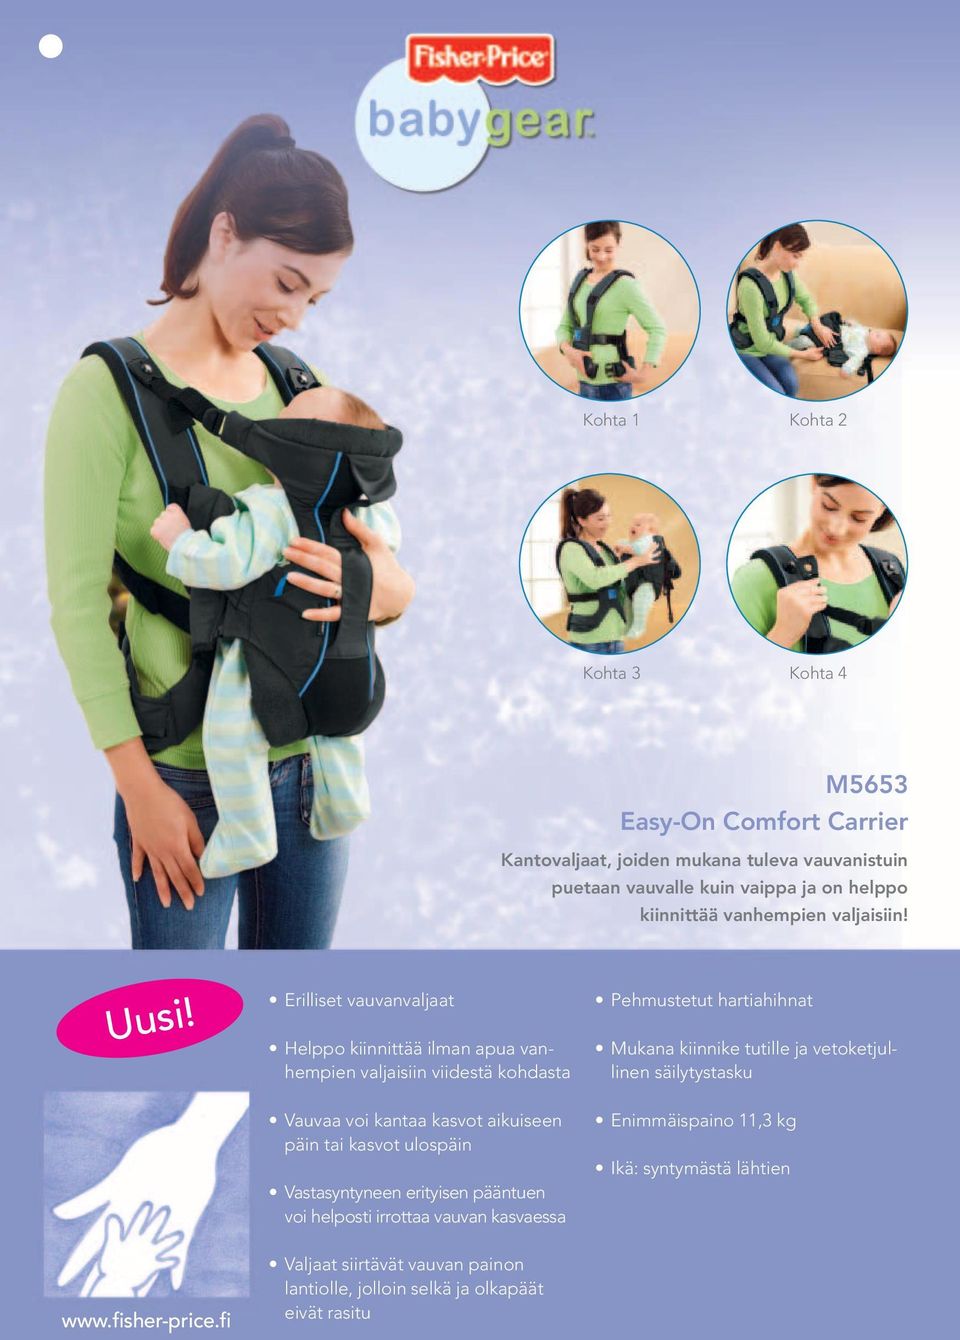 Erilliset vauvanvaljaat Helppo kiinnittää ilman apua vanhempien valjaisiin viidestä kohdasta Vauvaa voi kantaa kasvot aikuiseen päin tai kasvot